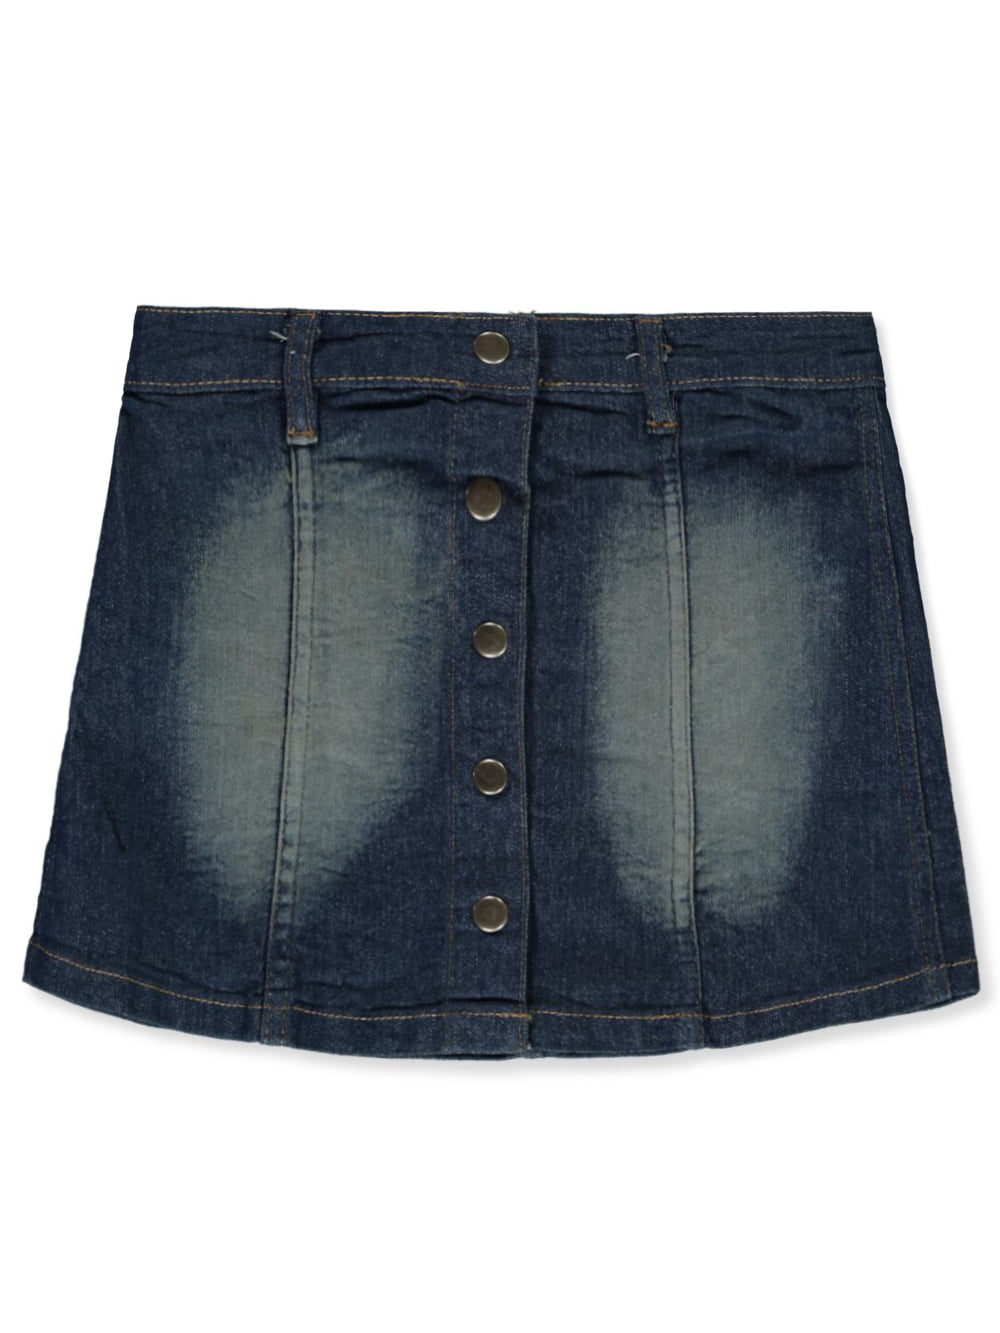 Ladies Button Through Denim Short Skirt Blue Pockets Stretch Cotton 